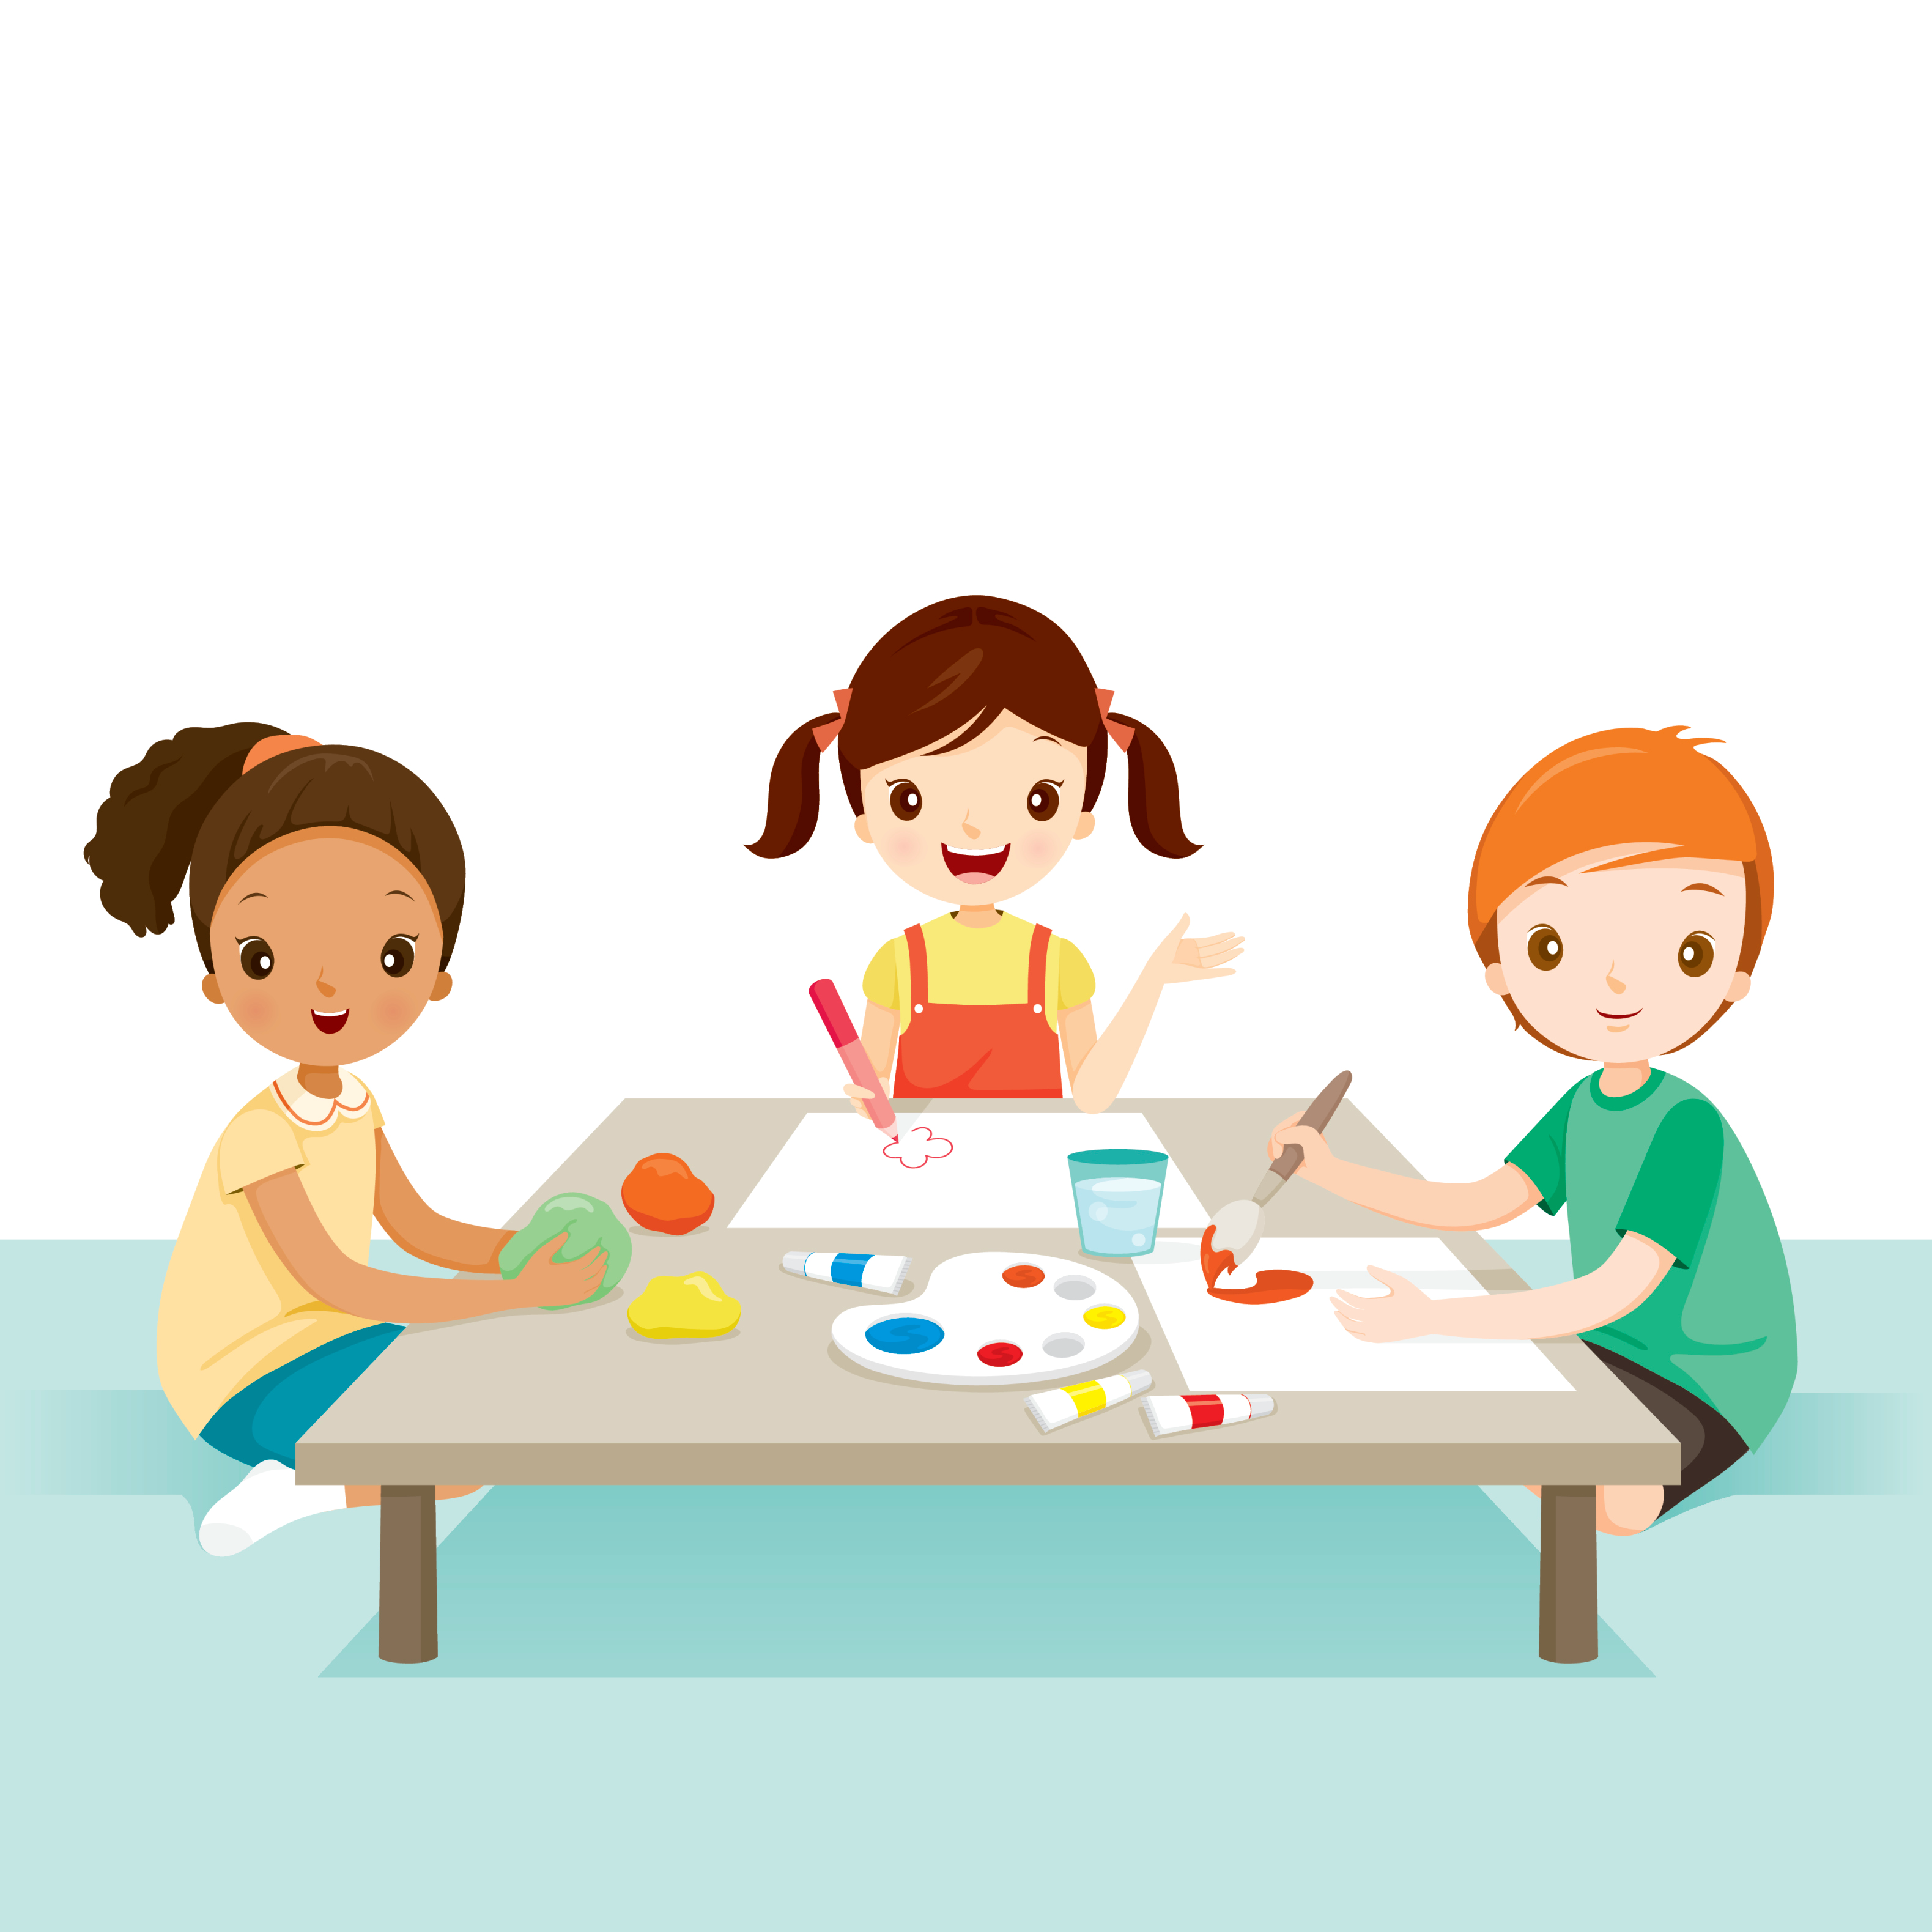 3 children doing crafts together